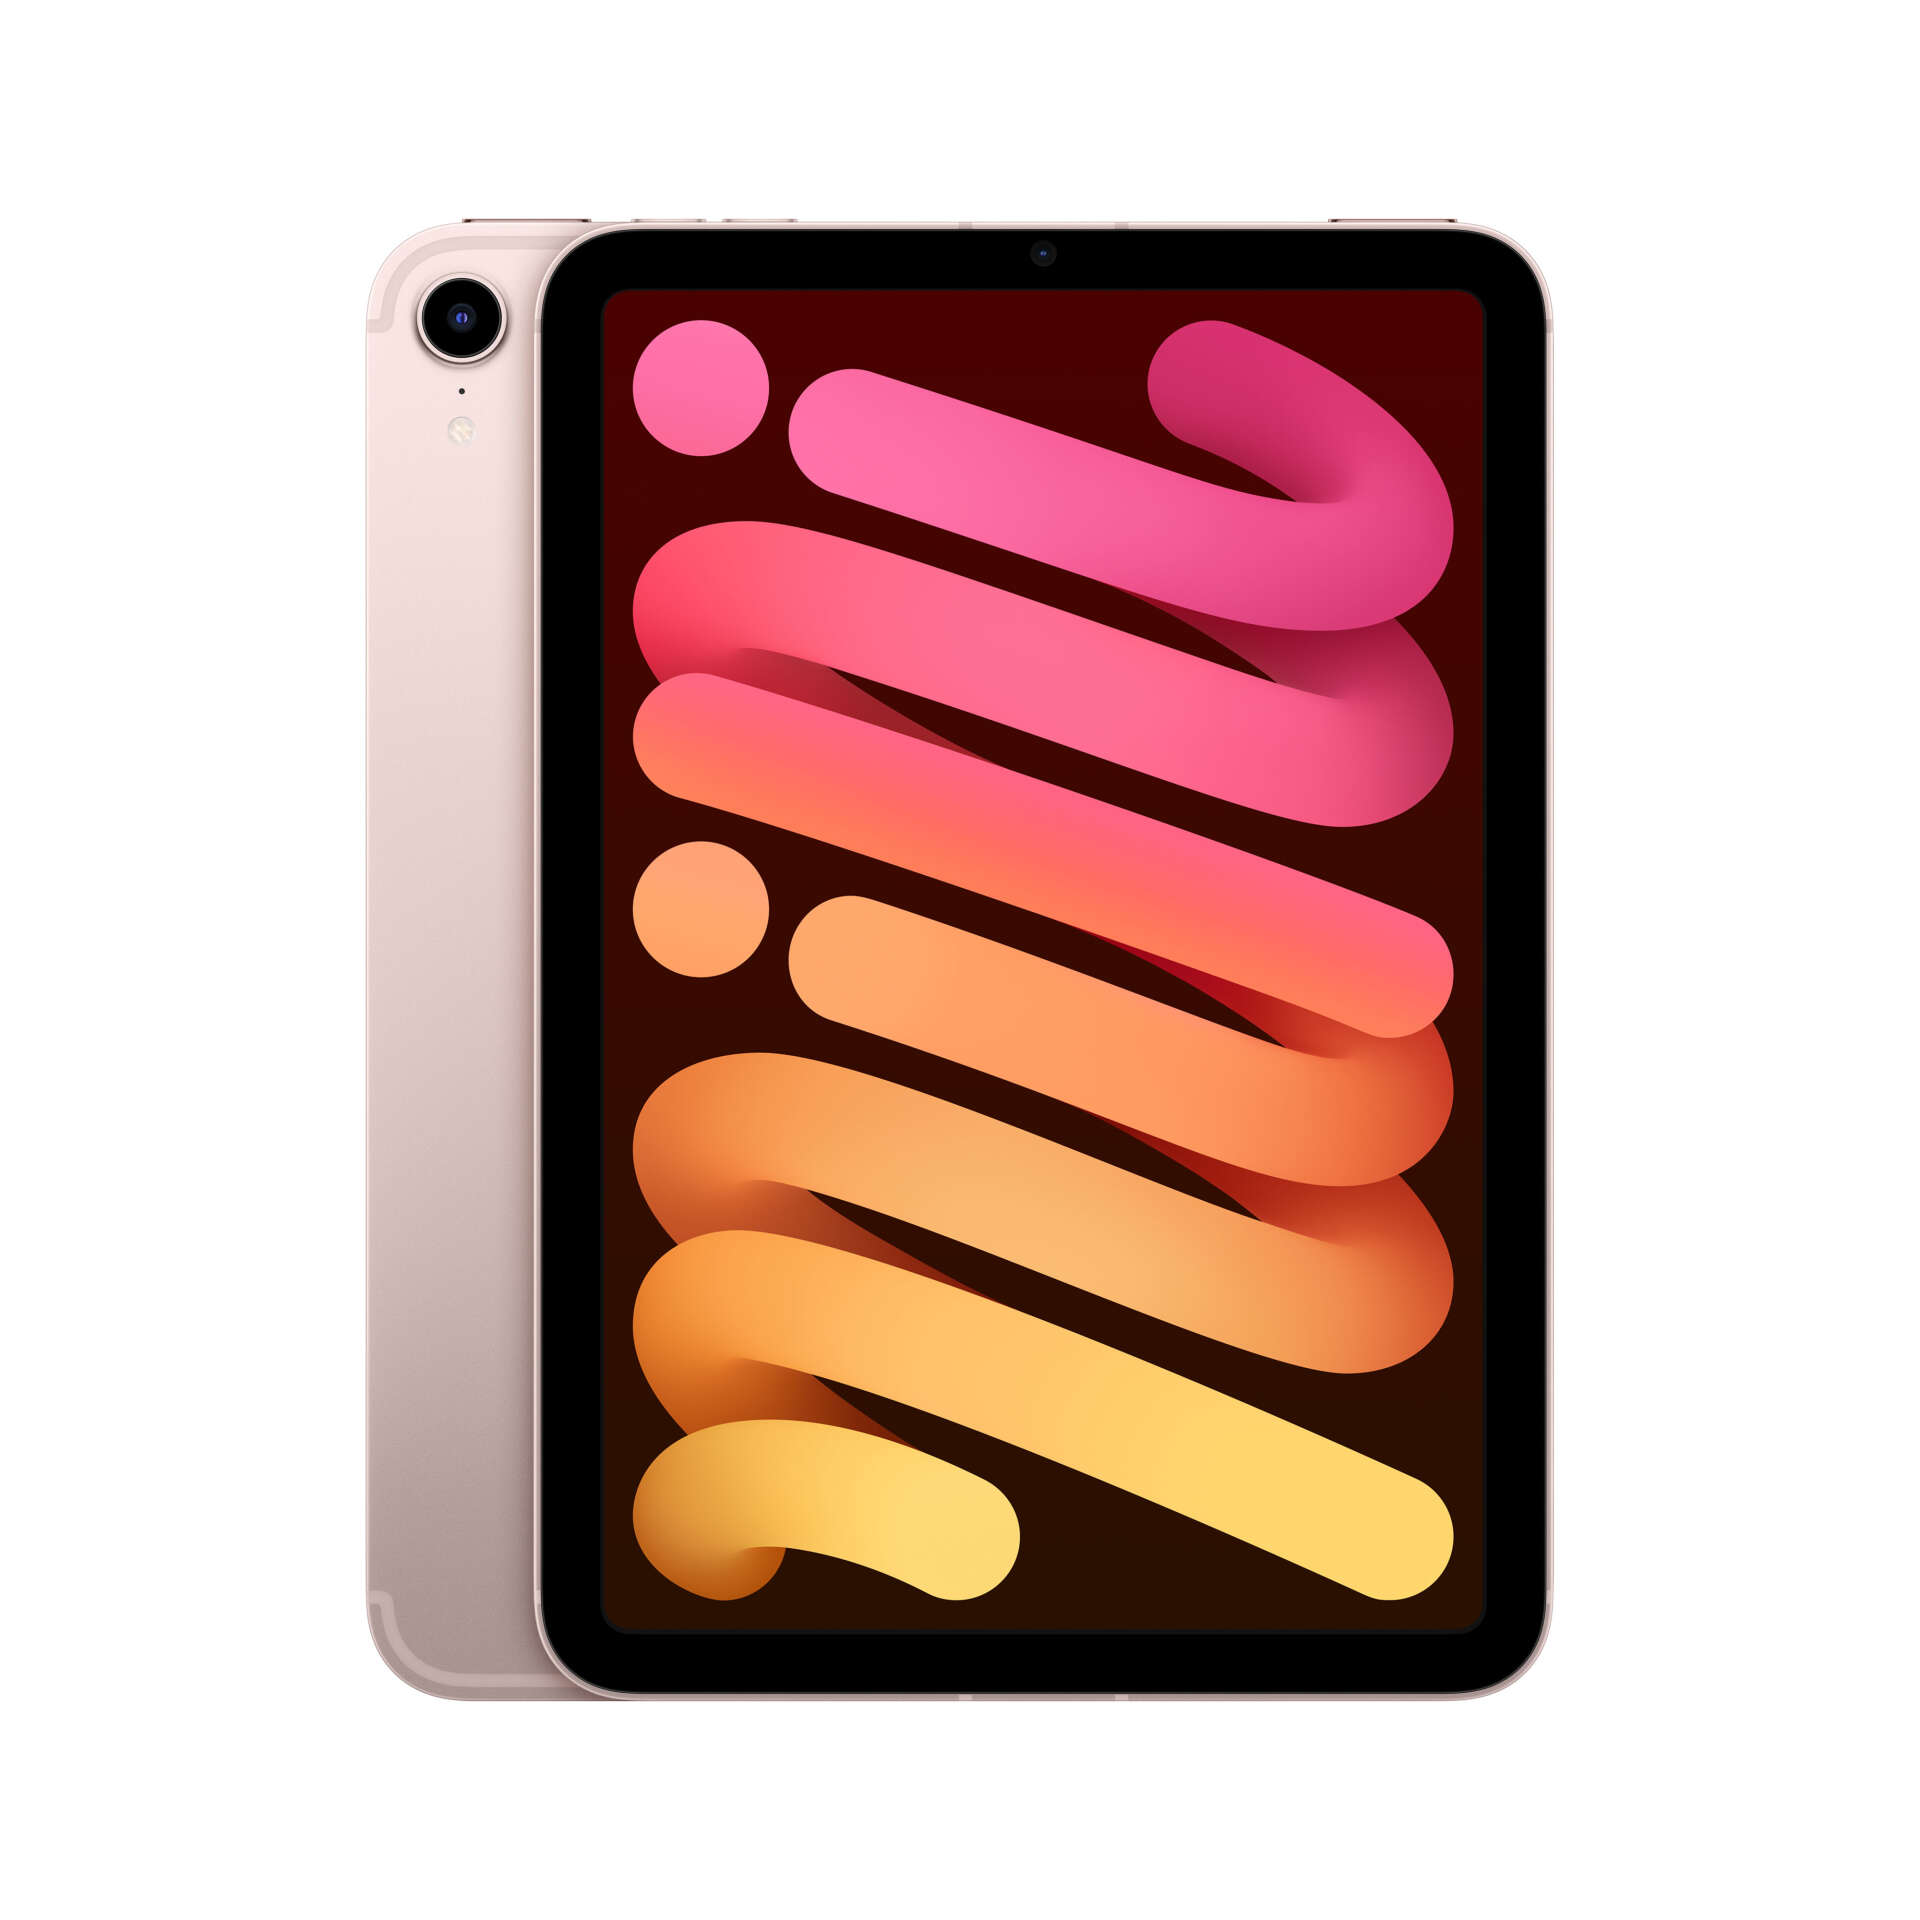 Apple ipad mini 5g td-lte & fdd-lte 64 gb 21,1 cm (8.3") wi-fi 6...